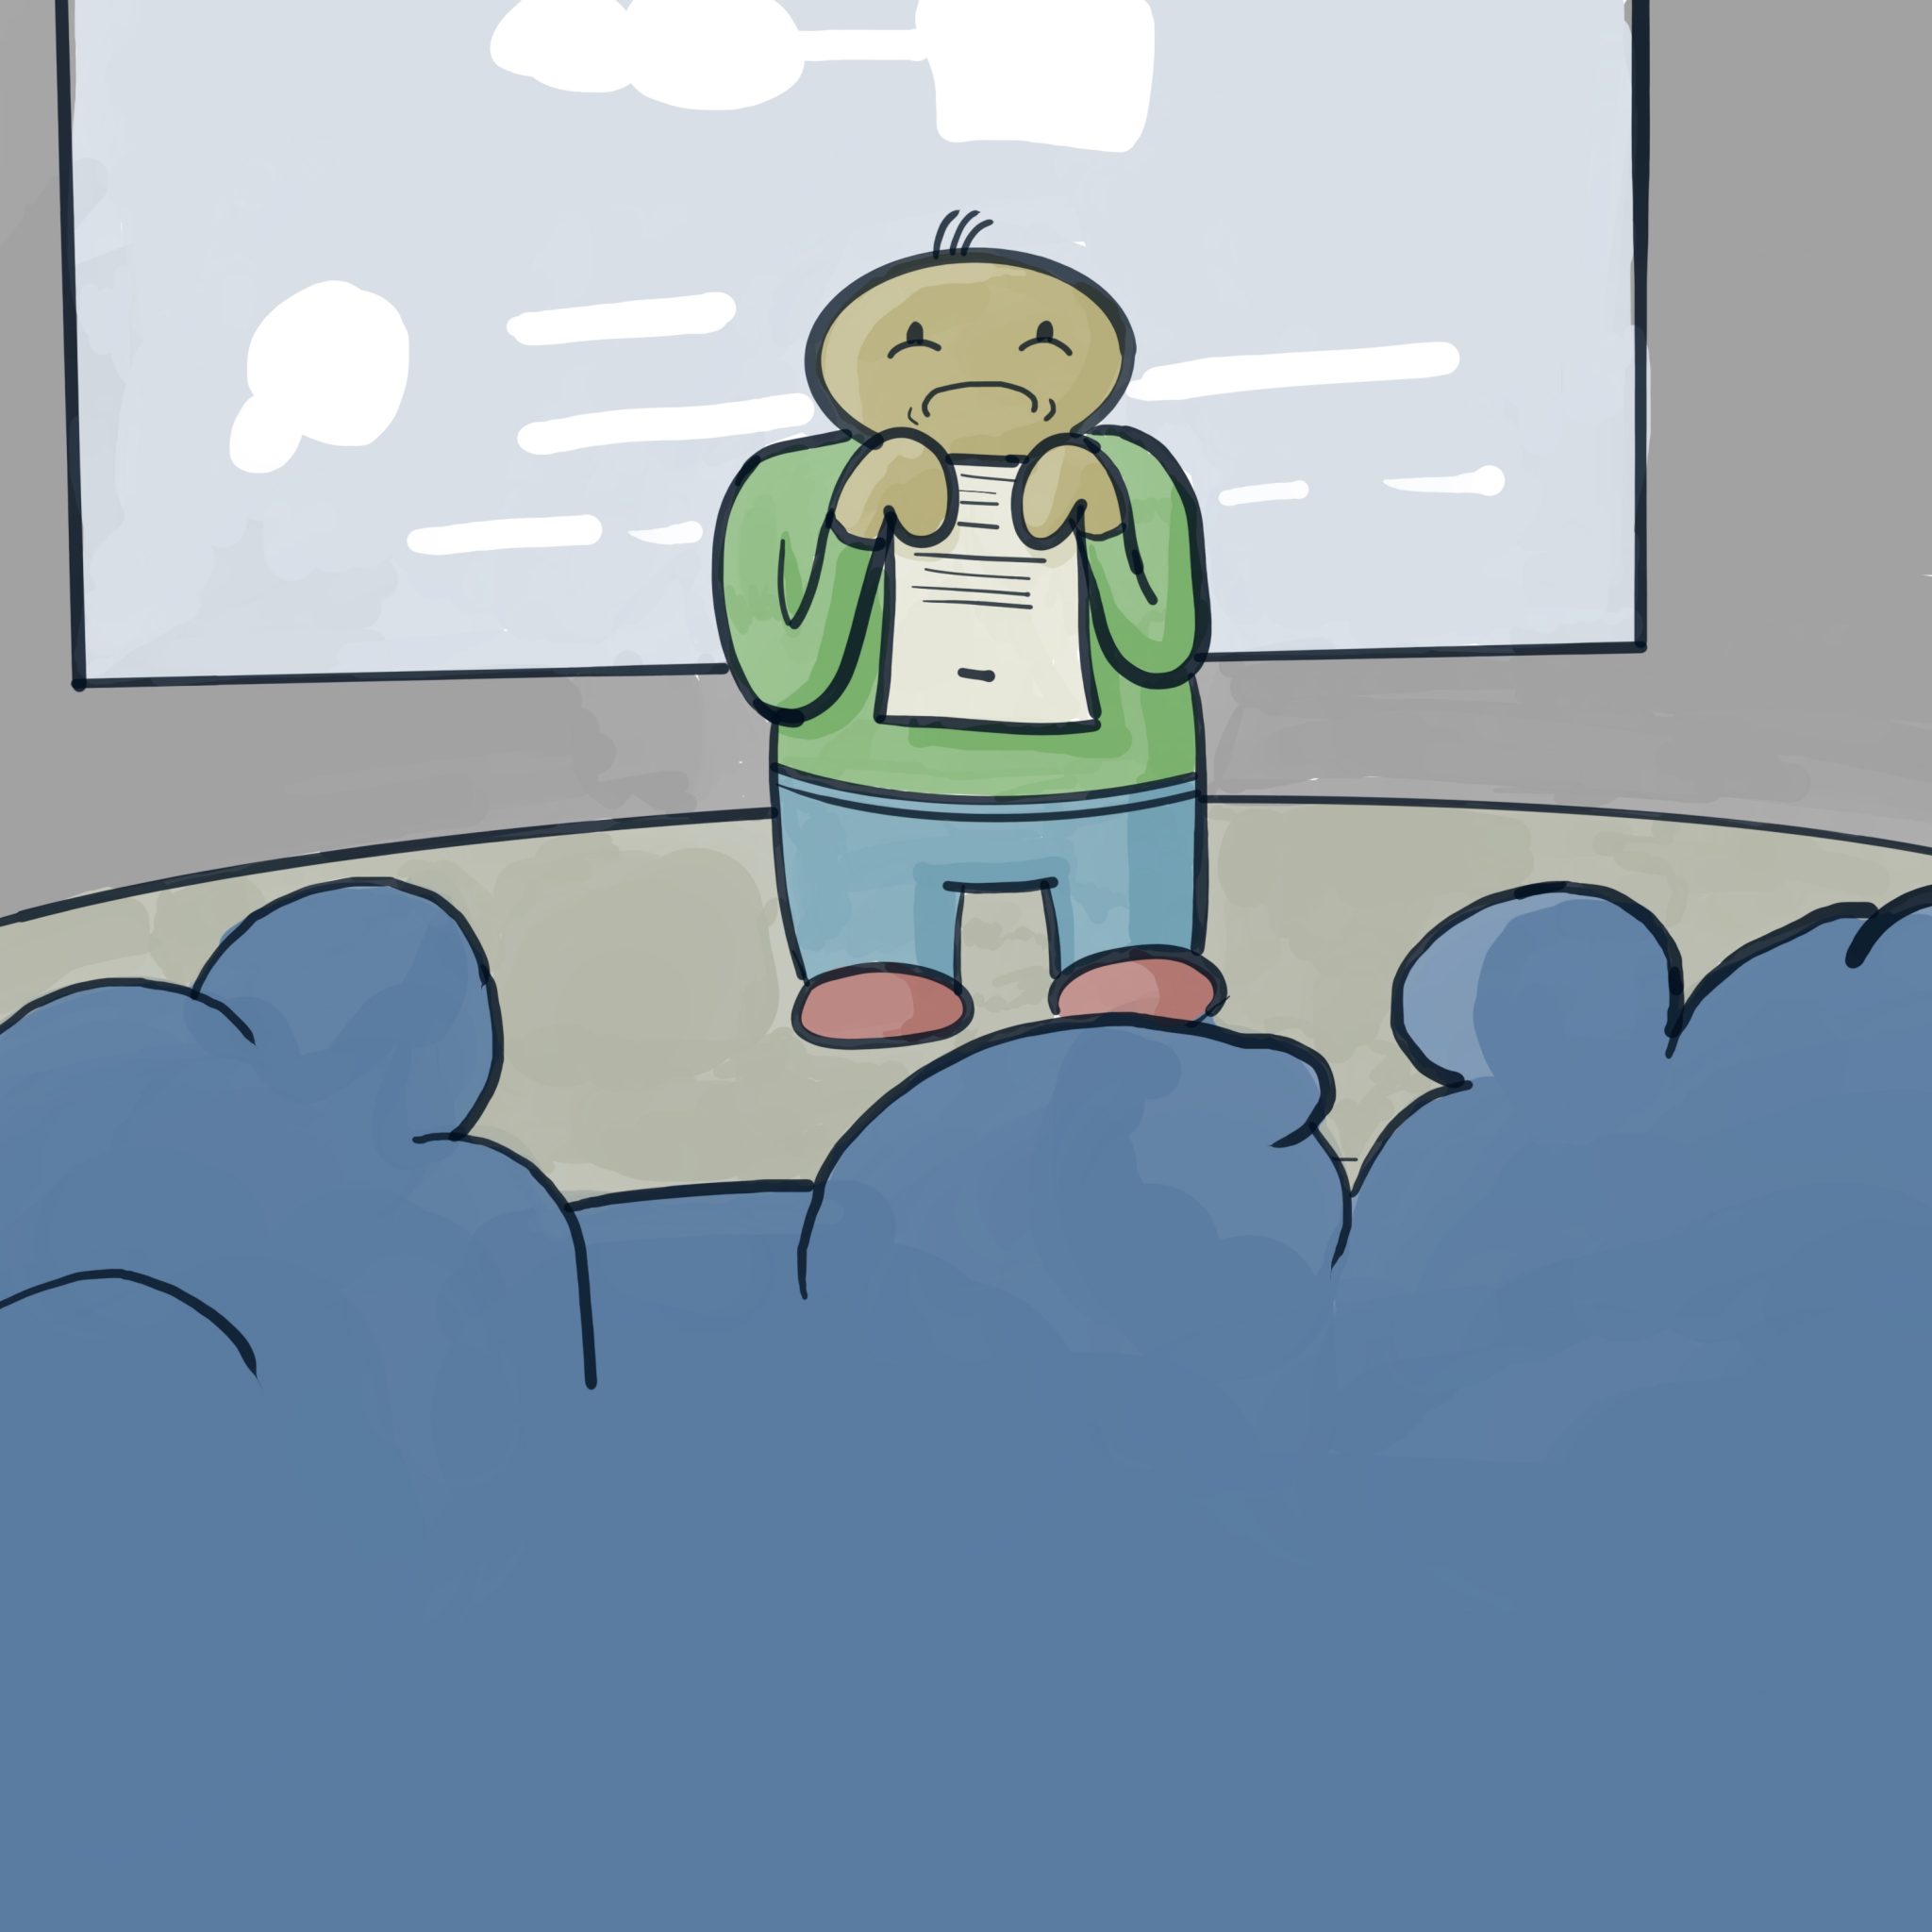 nervous giving presentations